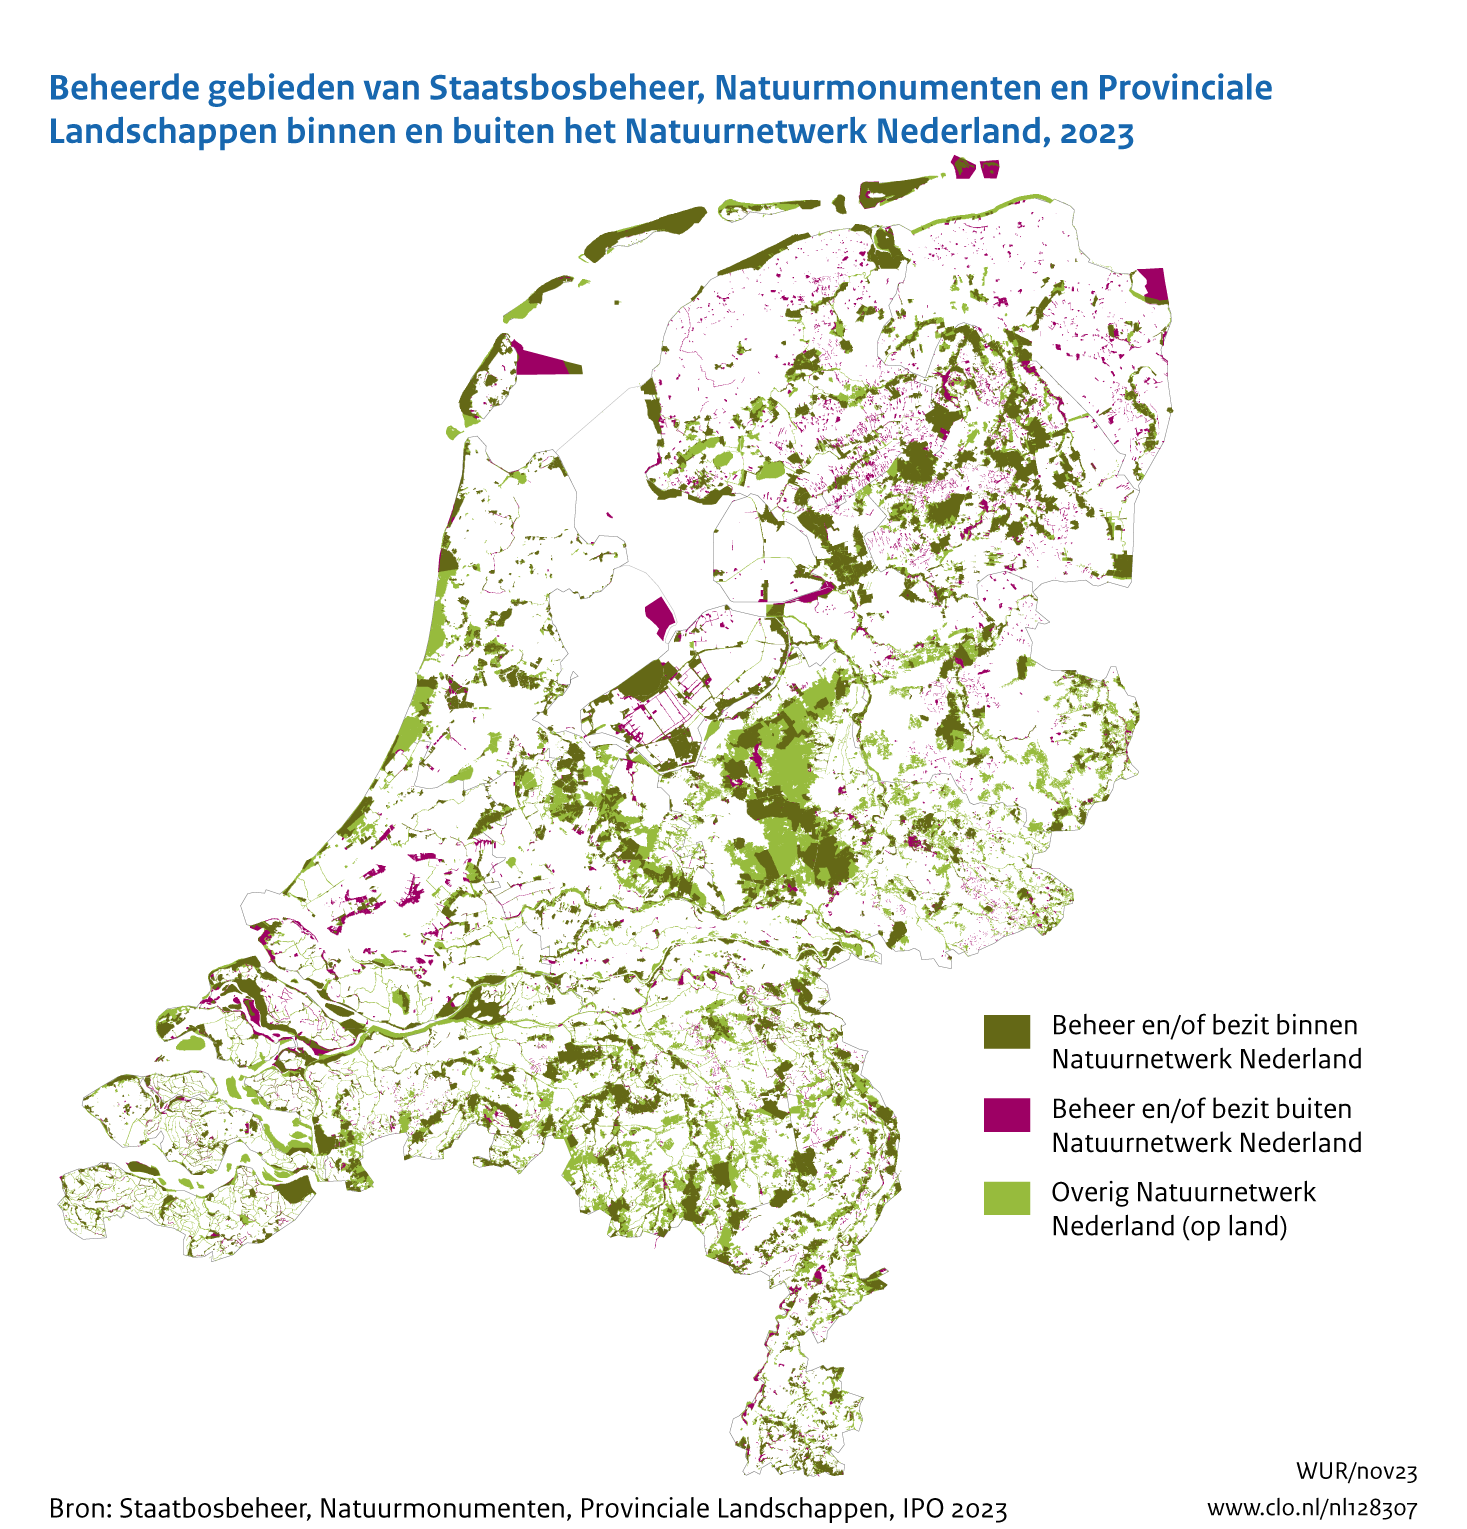 Figuur Kaart gebieden terreinbeherende organisaties in Nederland. In de rest van de tekst wordt deze figuur uitgebreider uitgelegd.